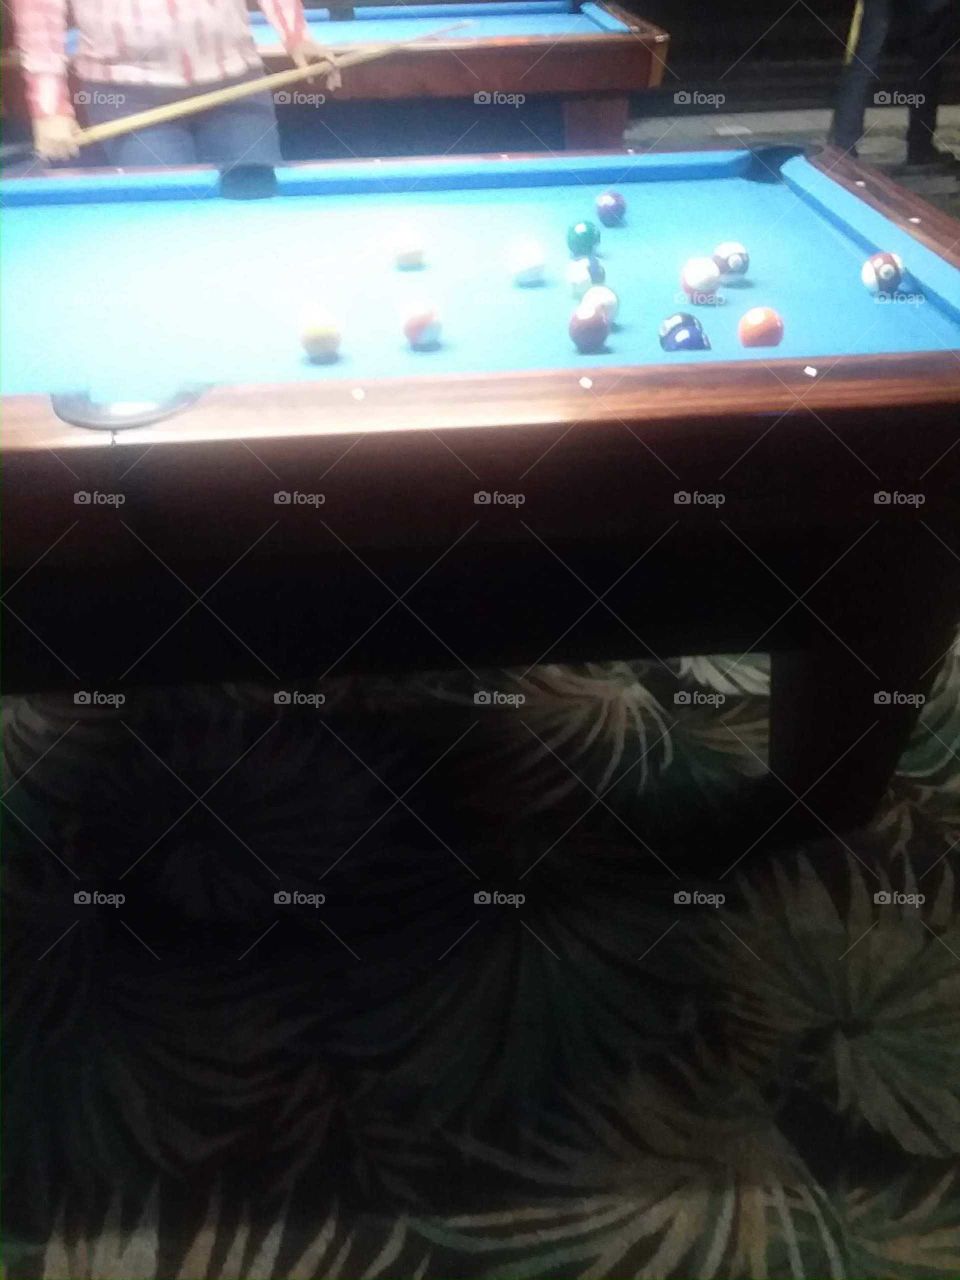 playing pool